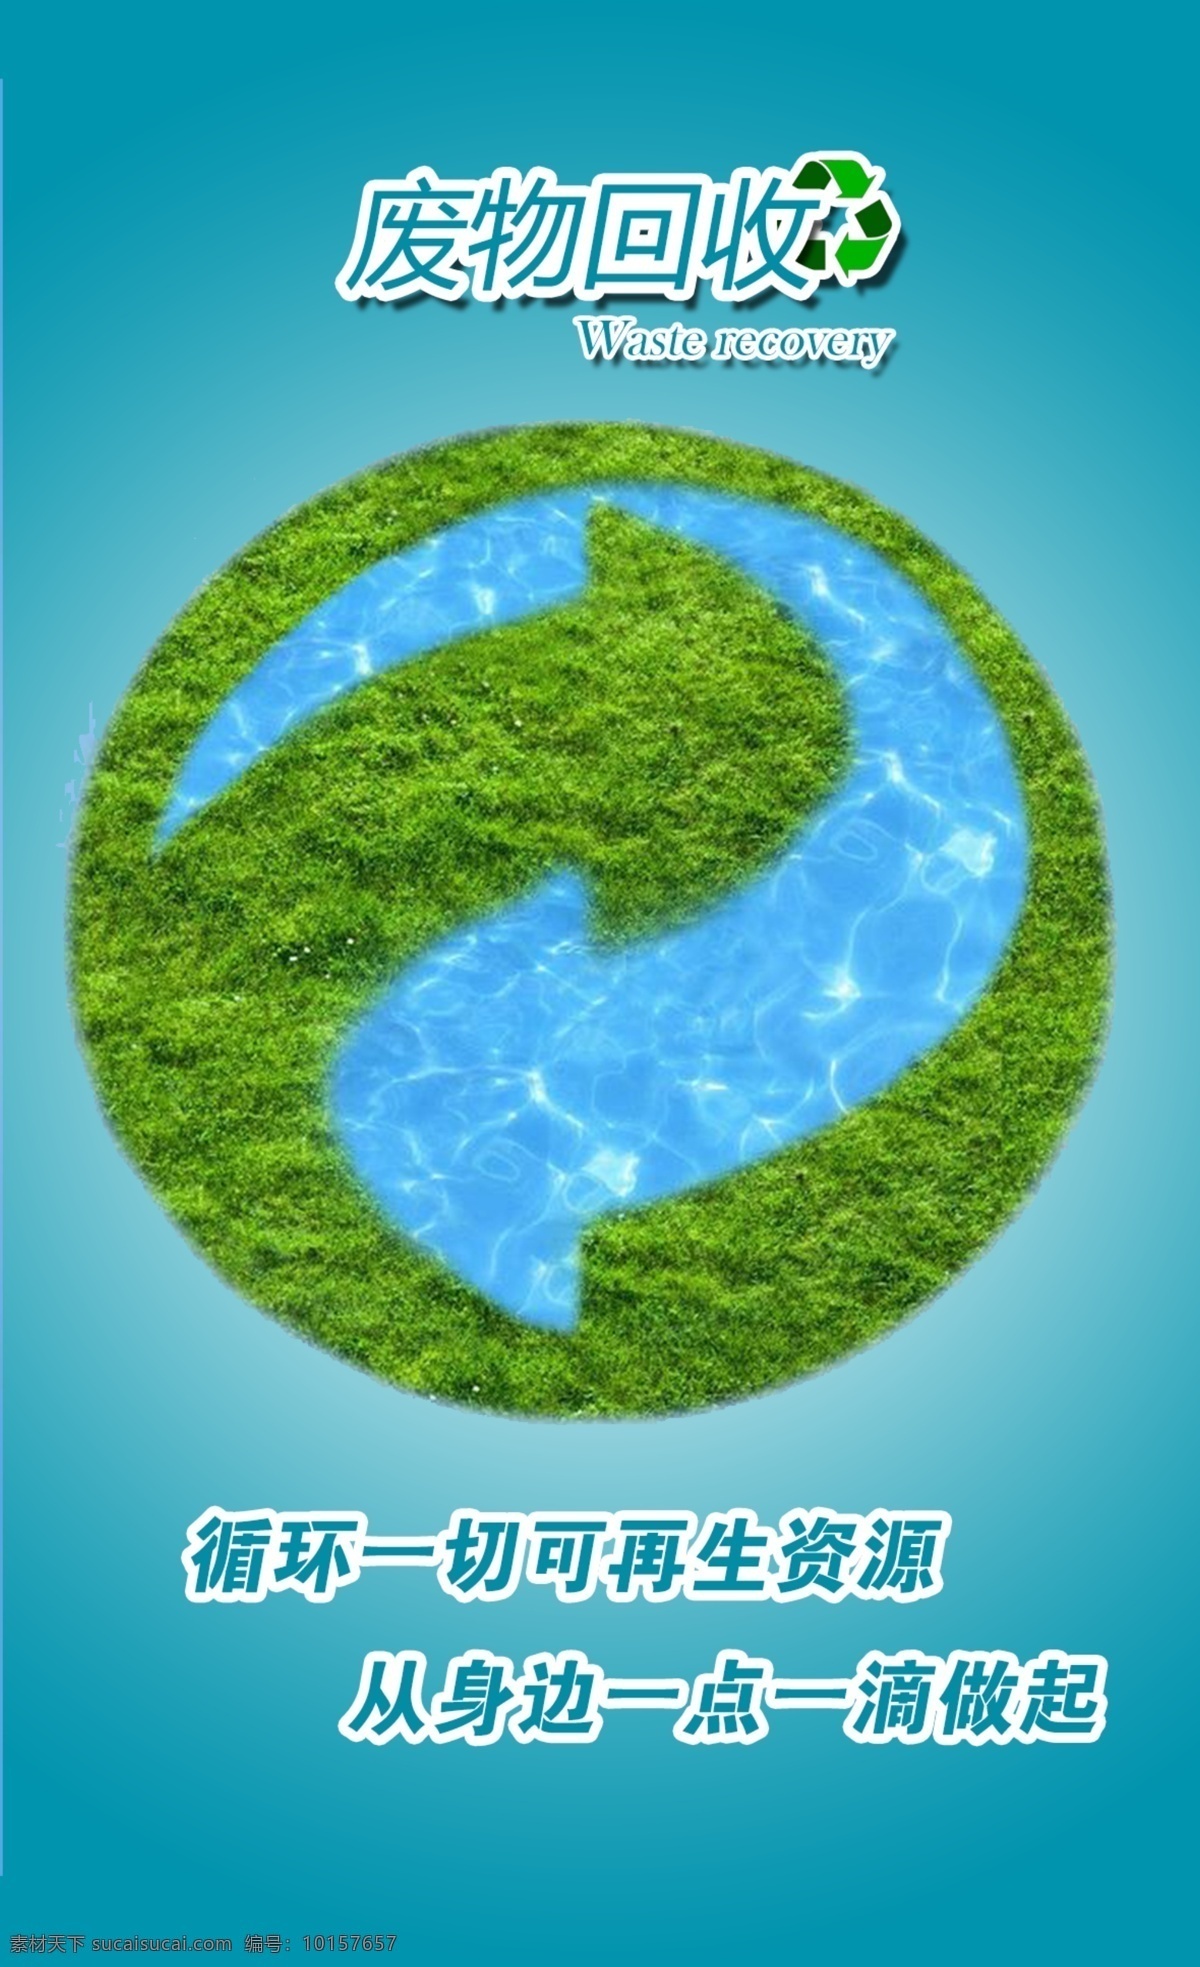 回收 利用 循环 海报 回收利用 废物回收 资源循环 草地 蓝色